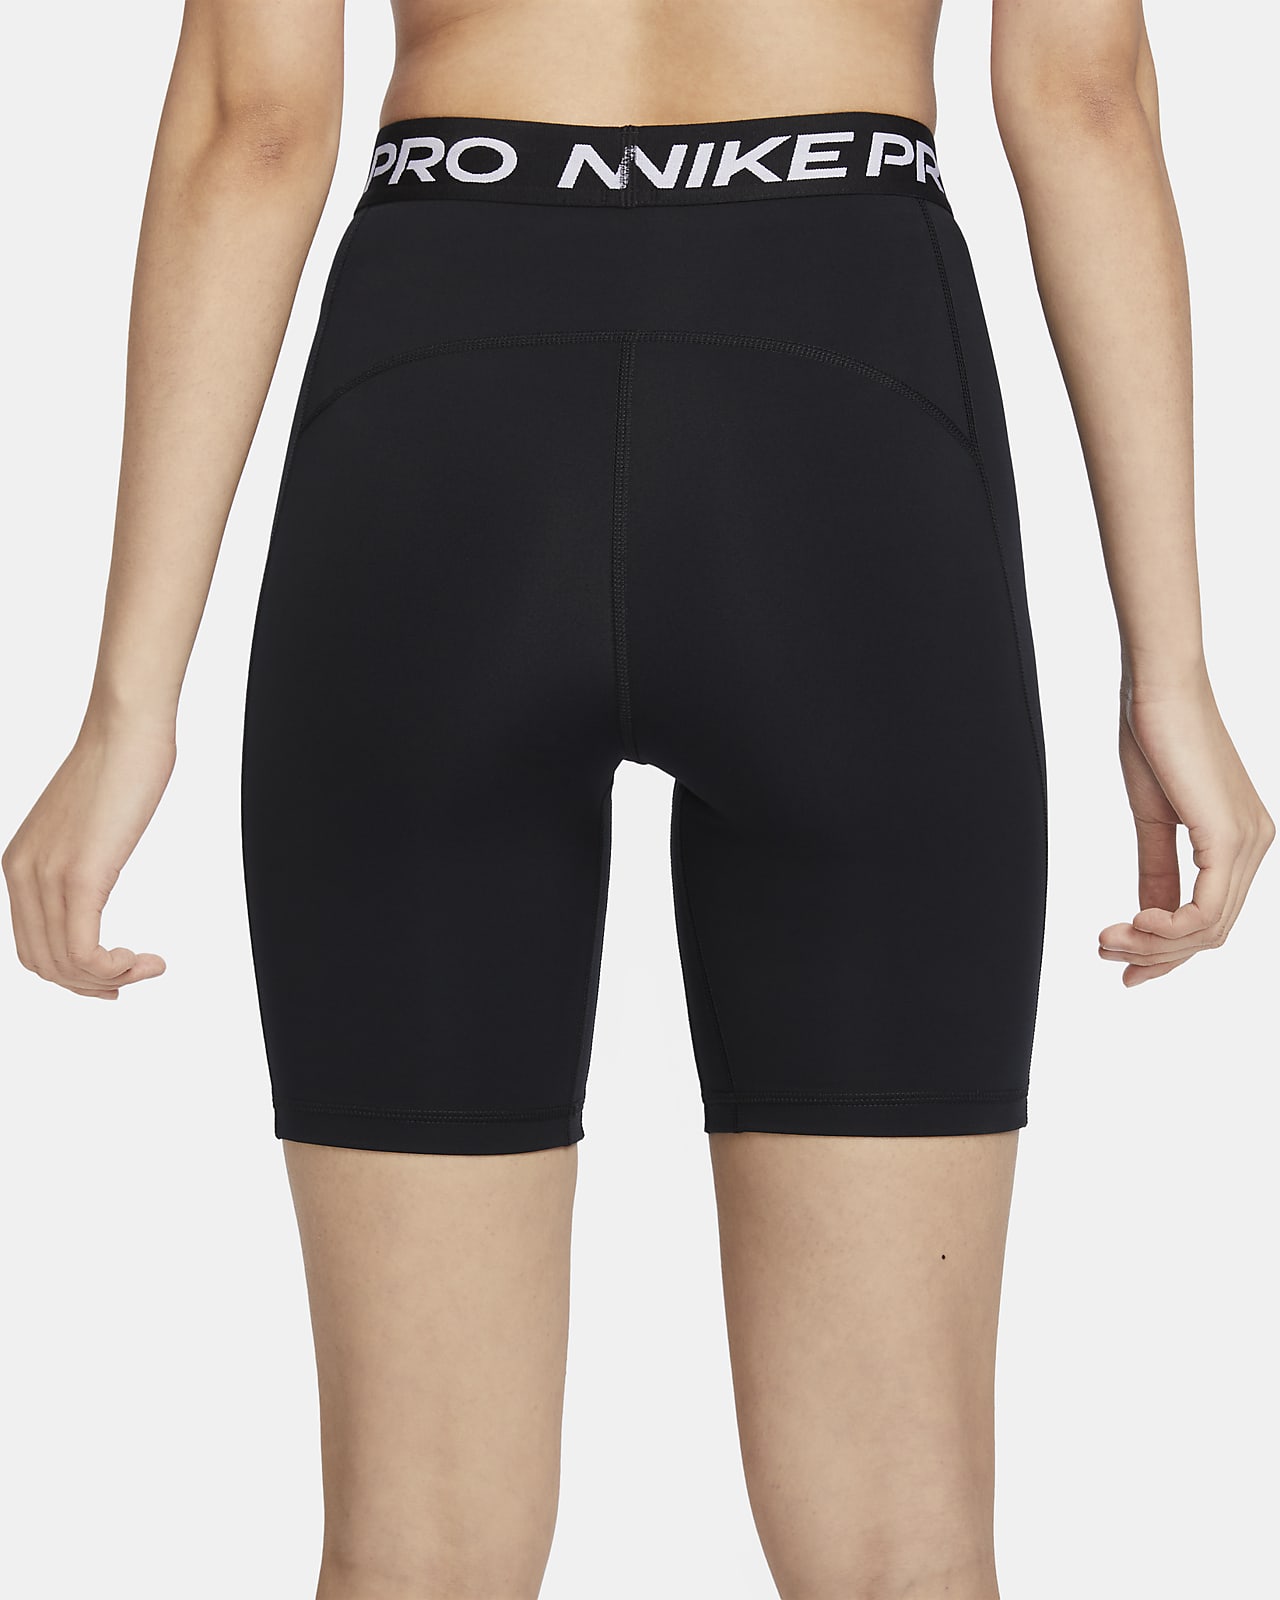 nike pro long shorts women's